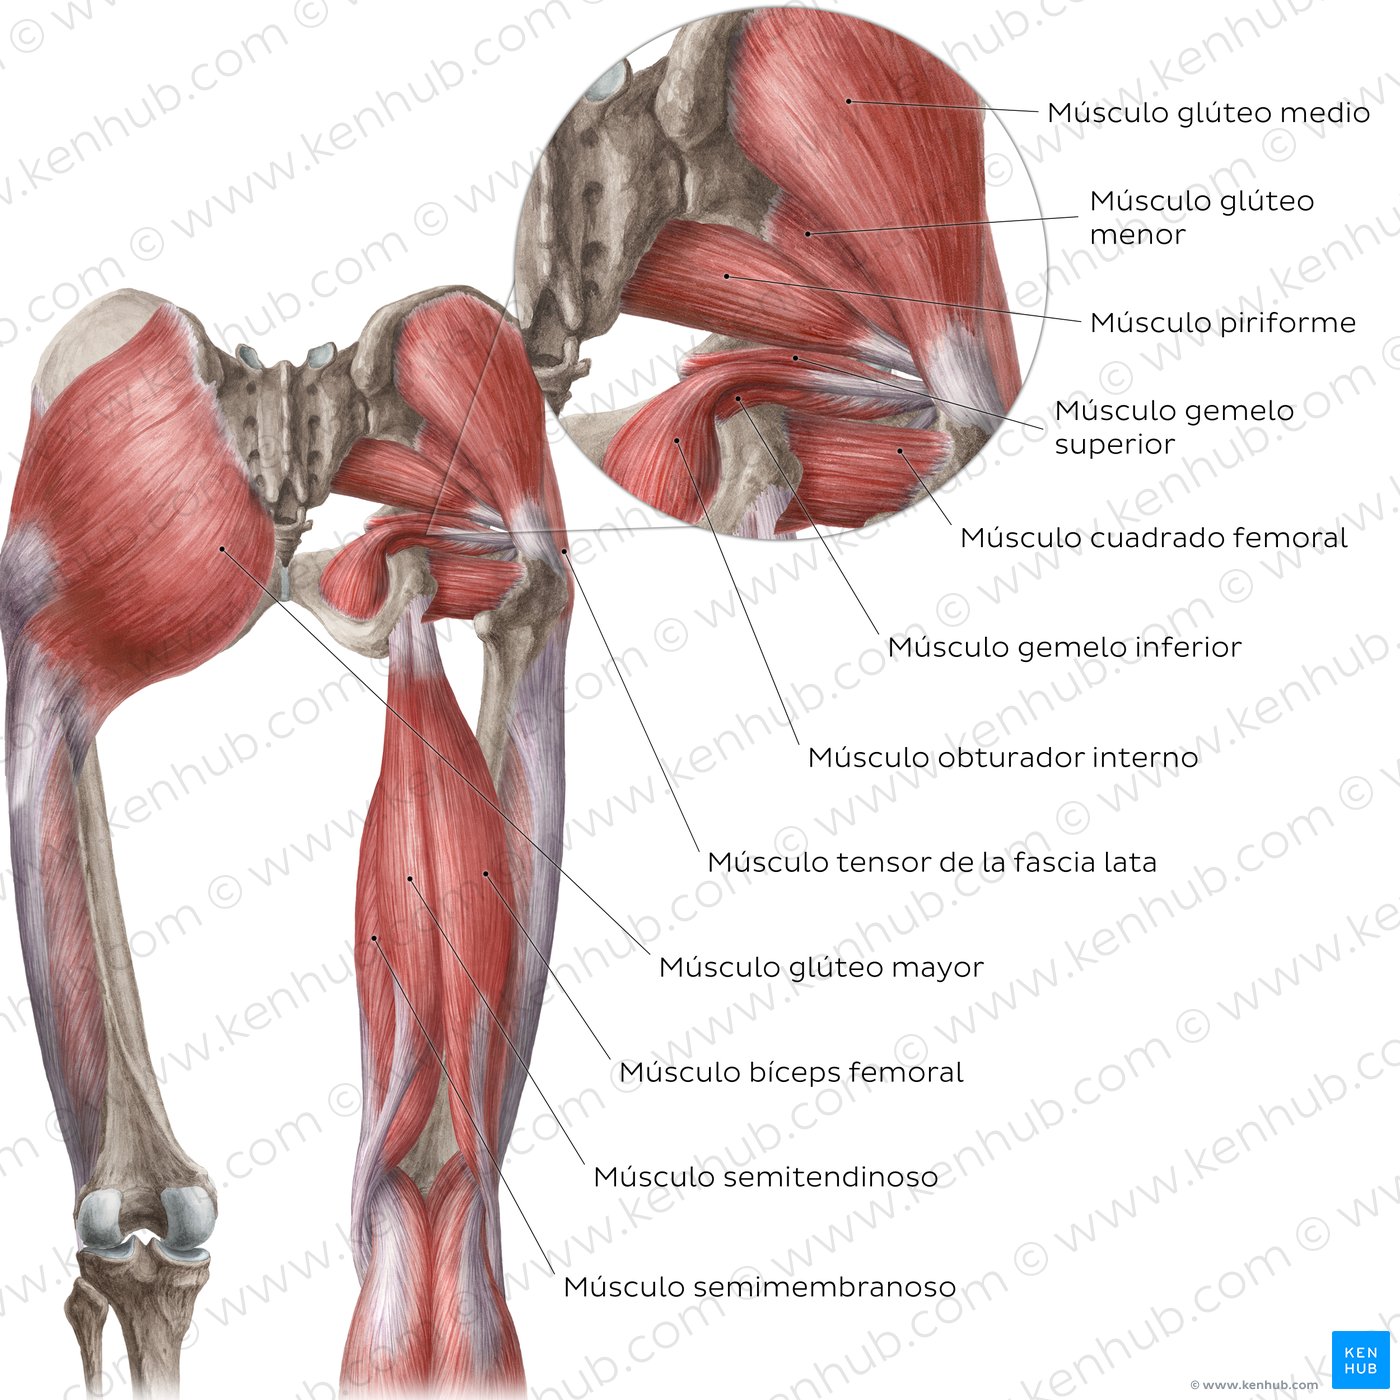 Músculos de la cadera y del muslo